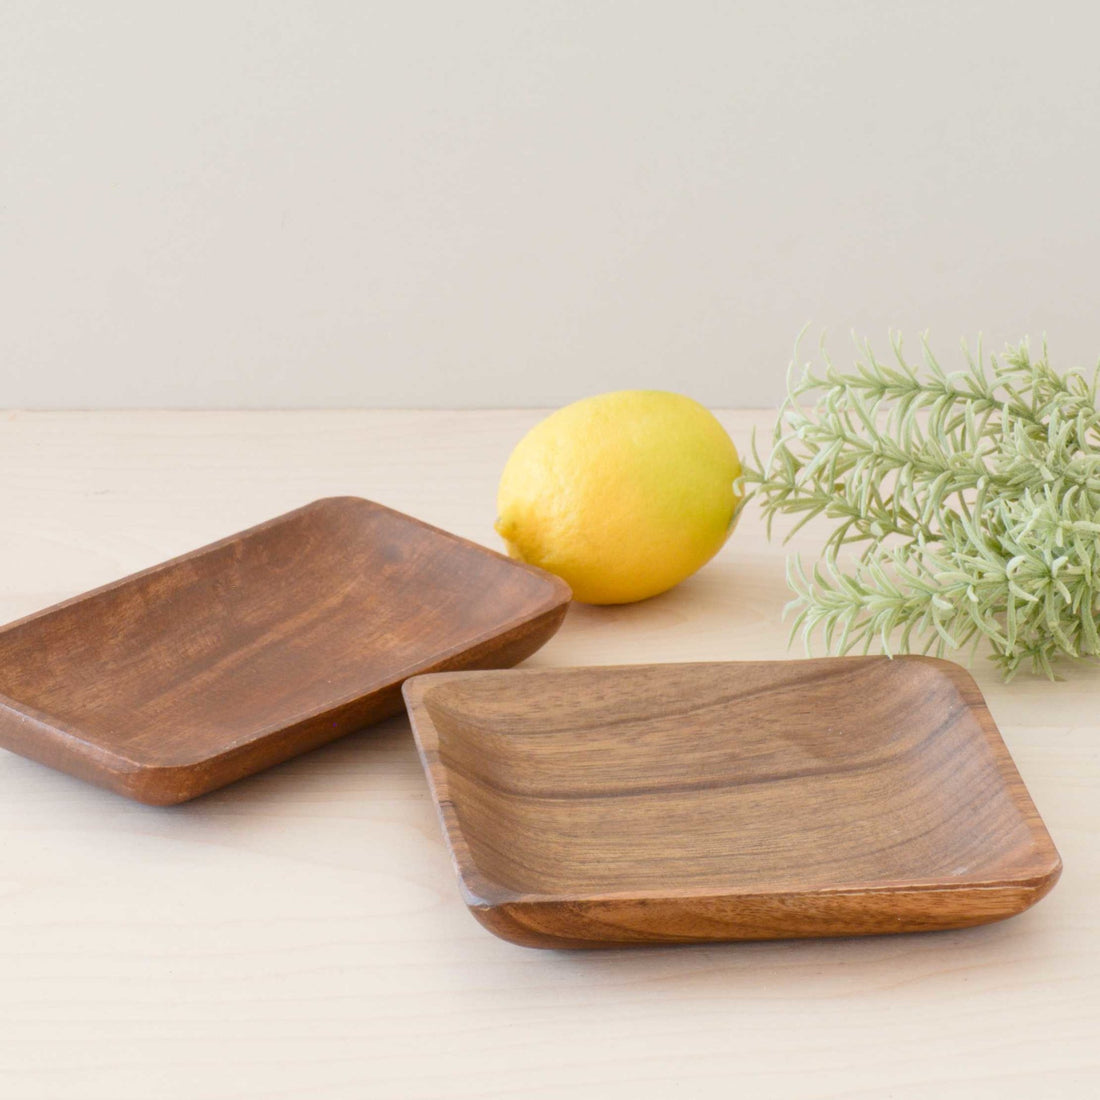 Ib Laursen Tray / Plate Acacia Wood Ø 29 cm